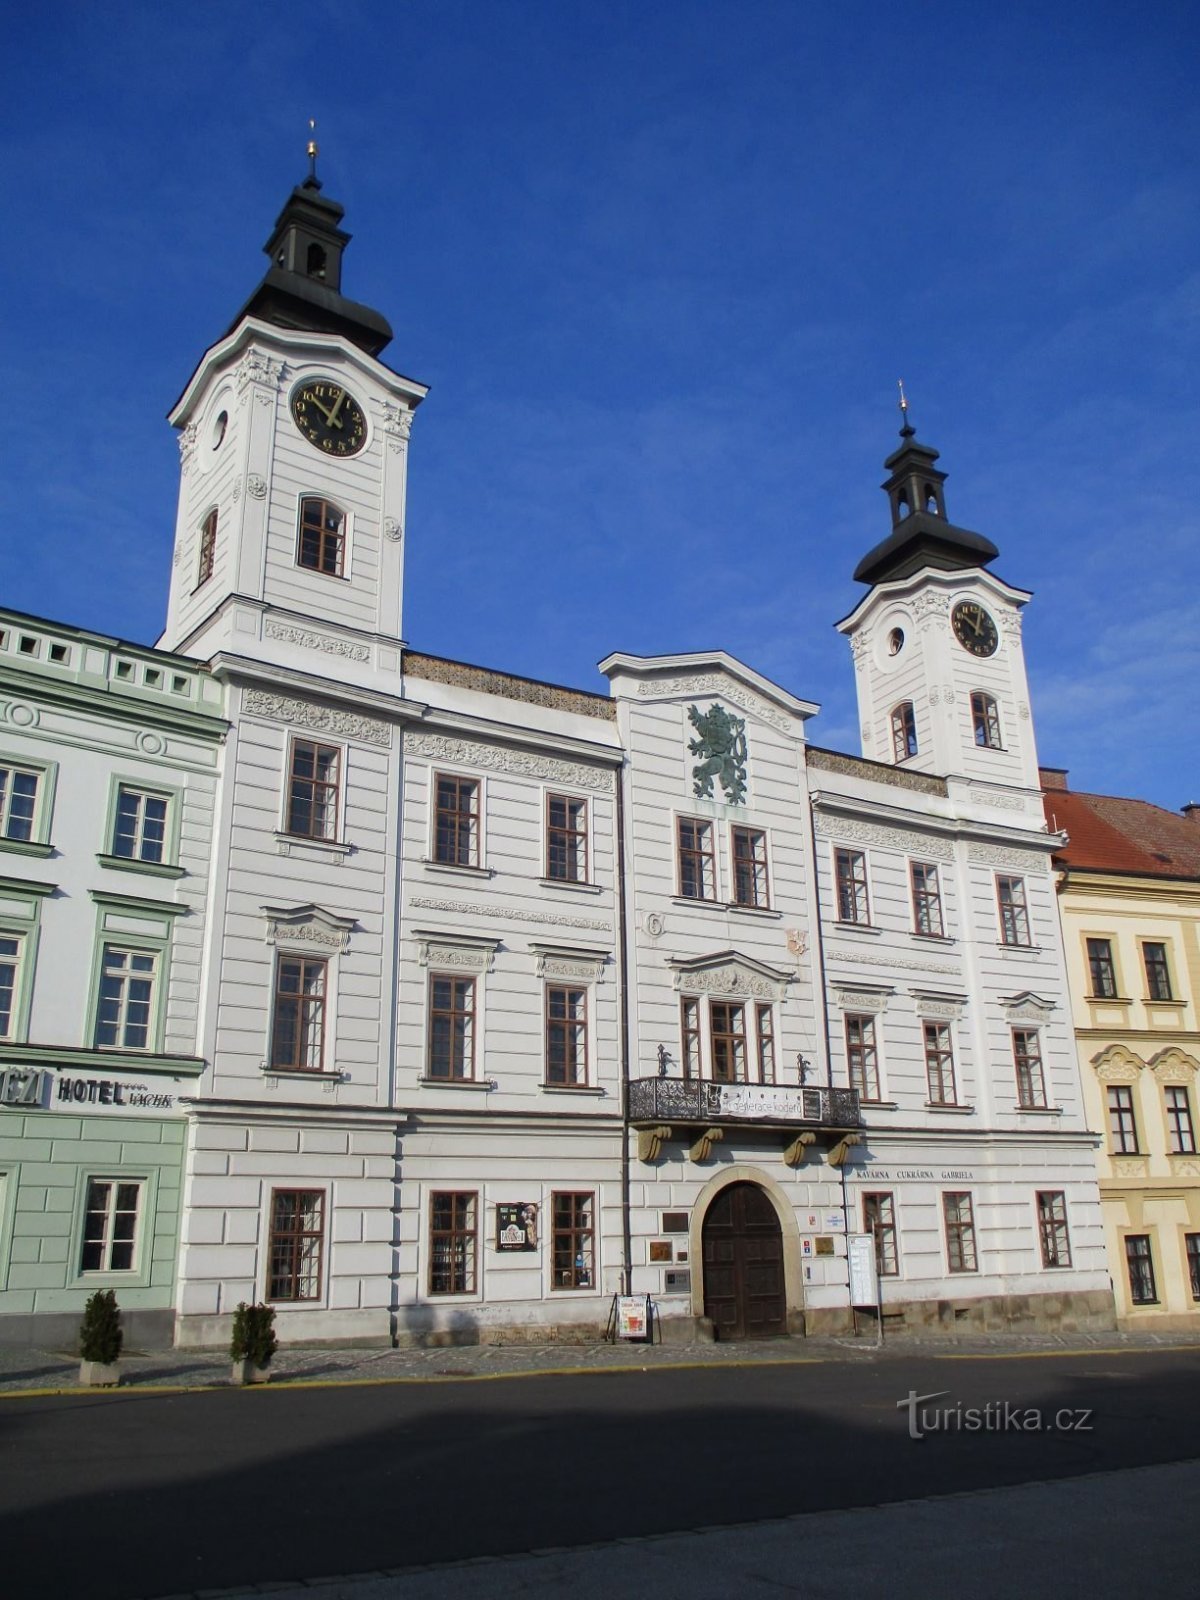 Tidligere rådhus nr. 1 på Velké náměstí (Hradec Králové, 9.2.2020/XNUMX/XNUMX)